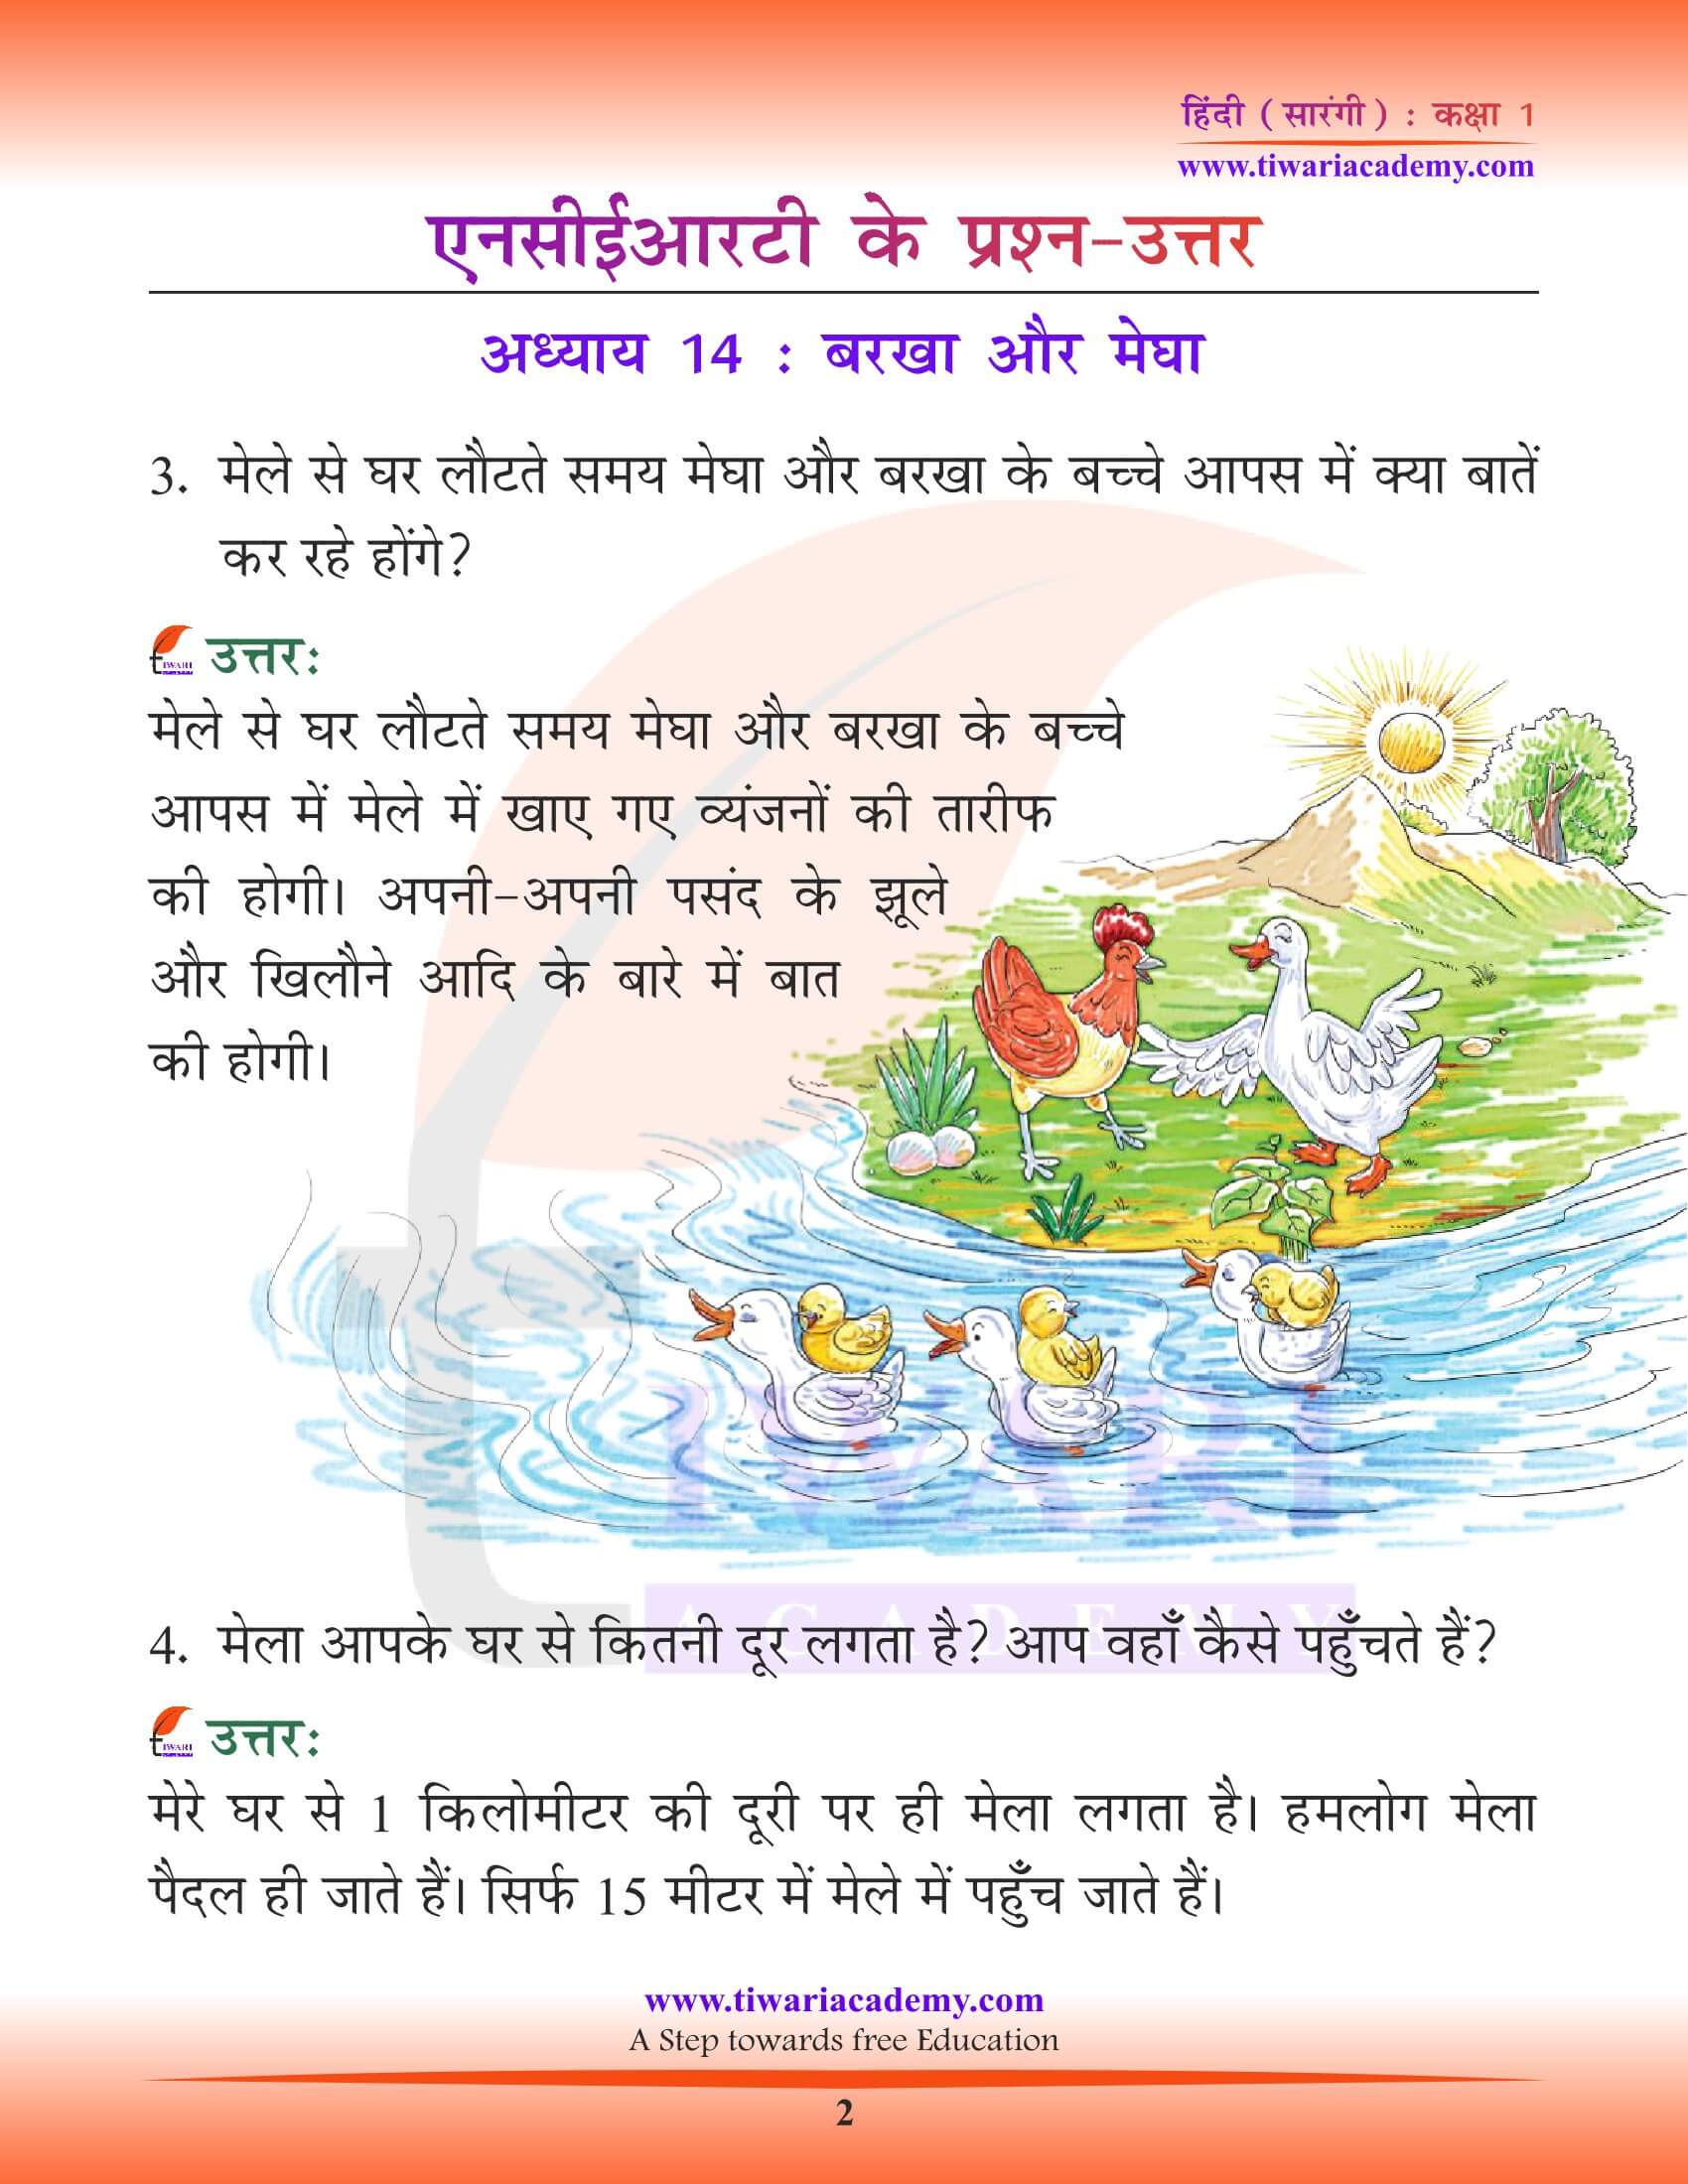 कक्षा 1 हिंदी सारंगी पाठ 14 बरखा और मेघा